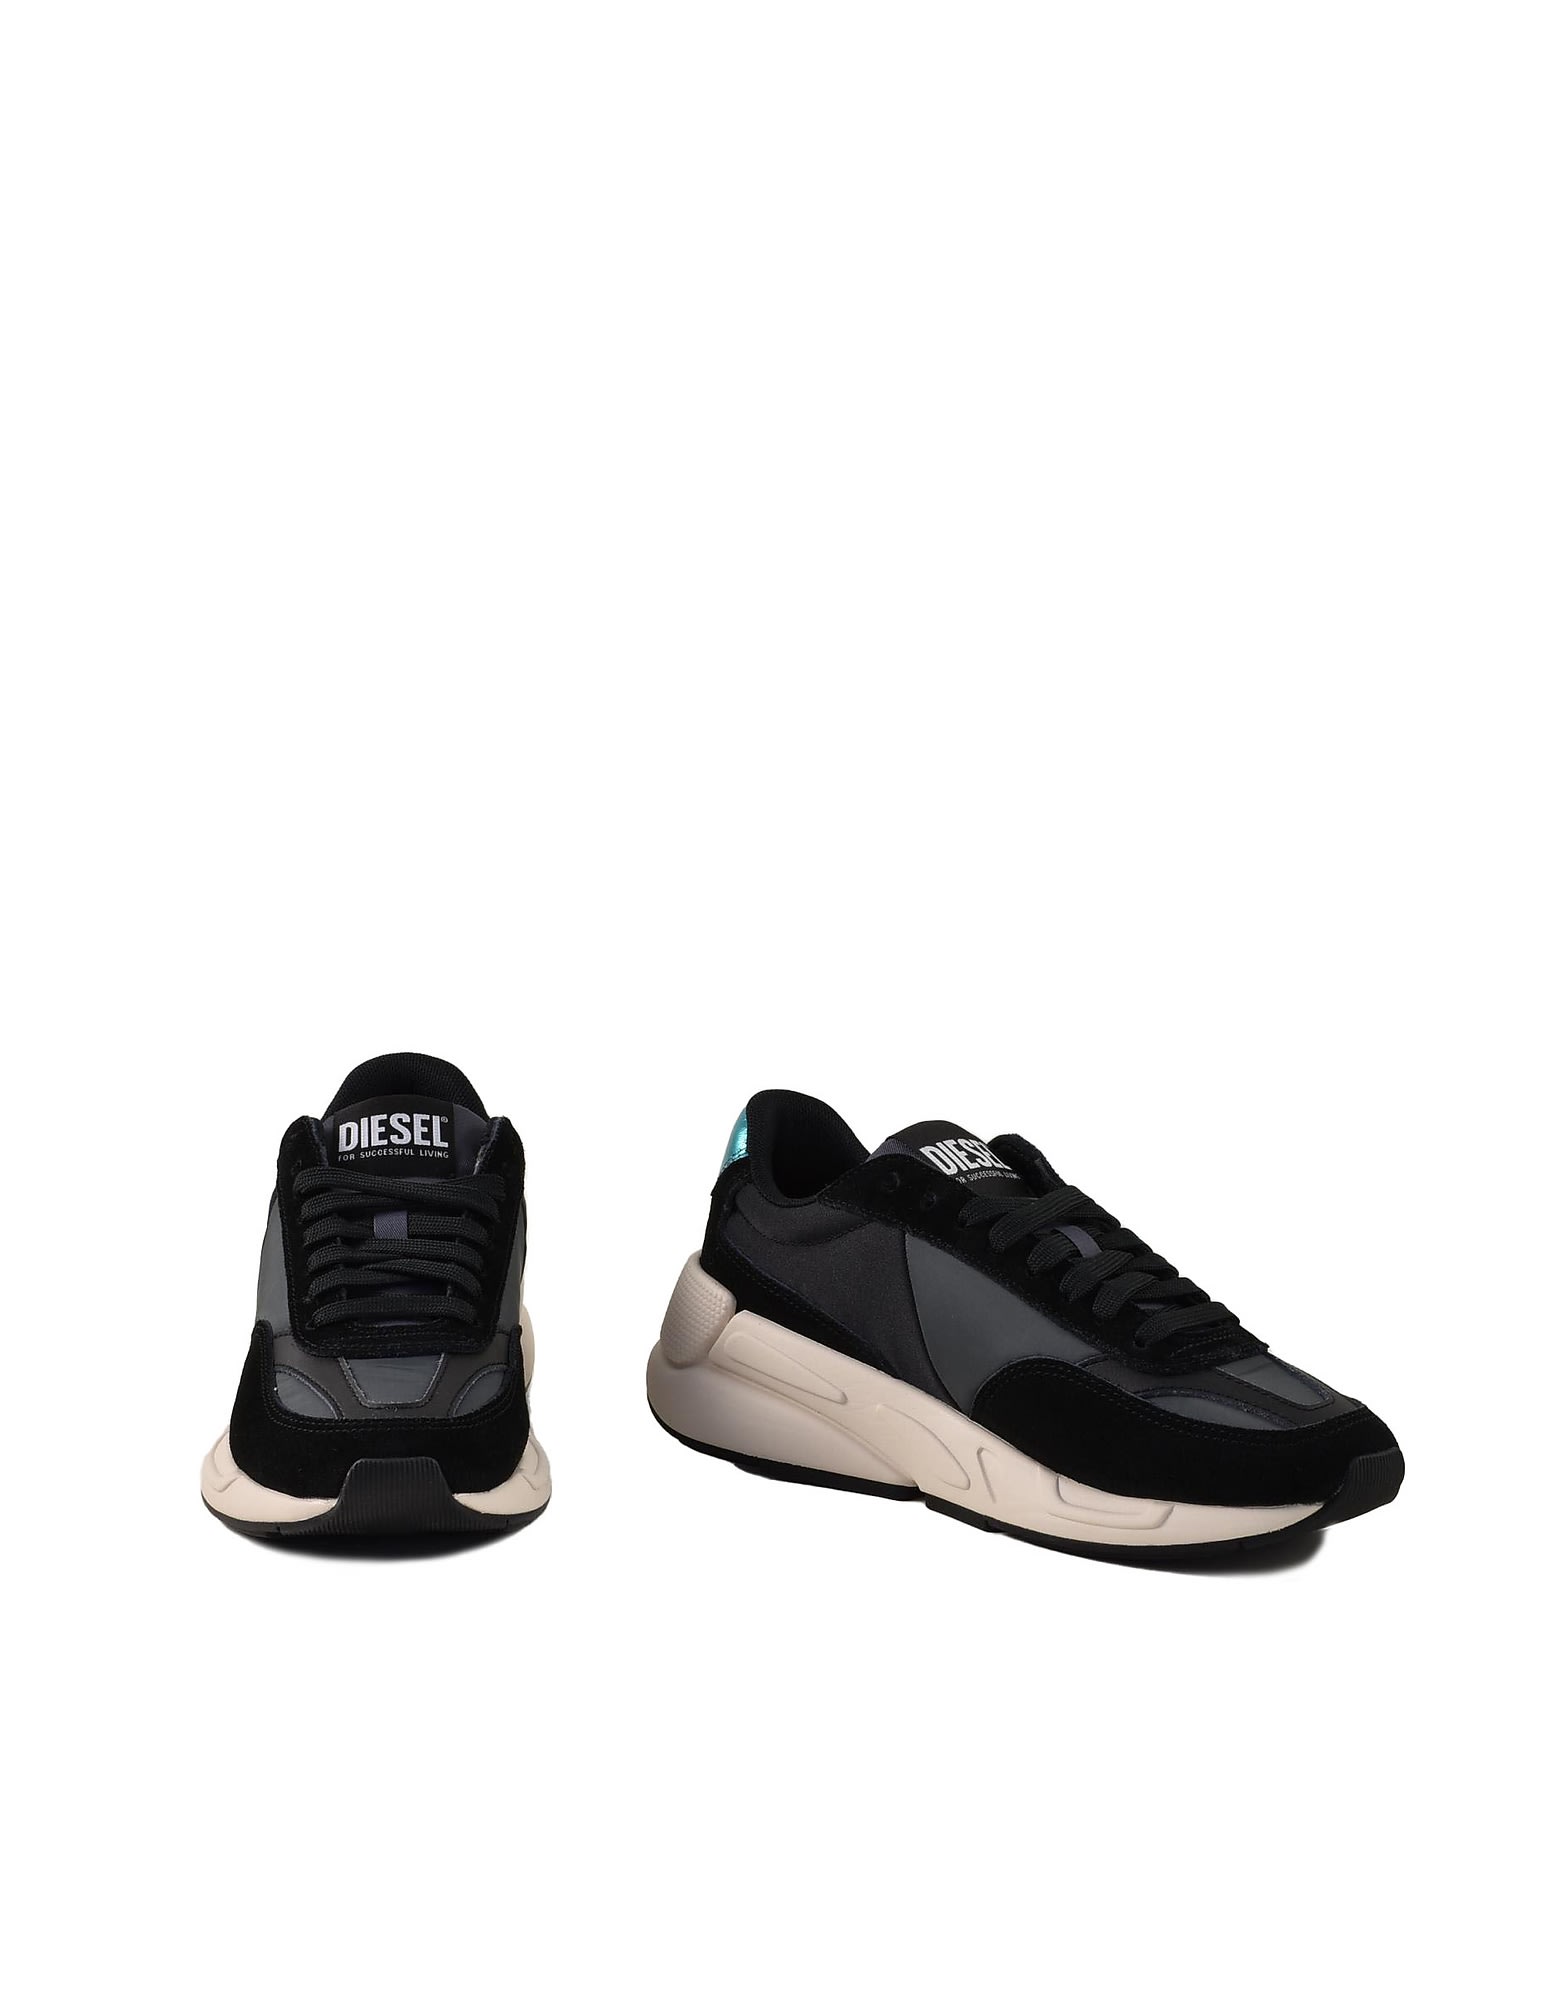 Diesel Womens Black / Gray Sneakers